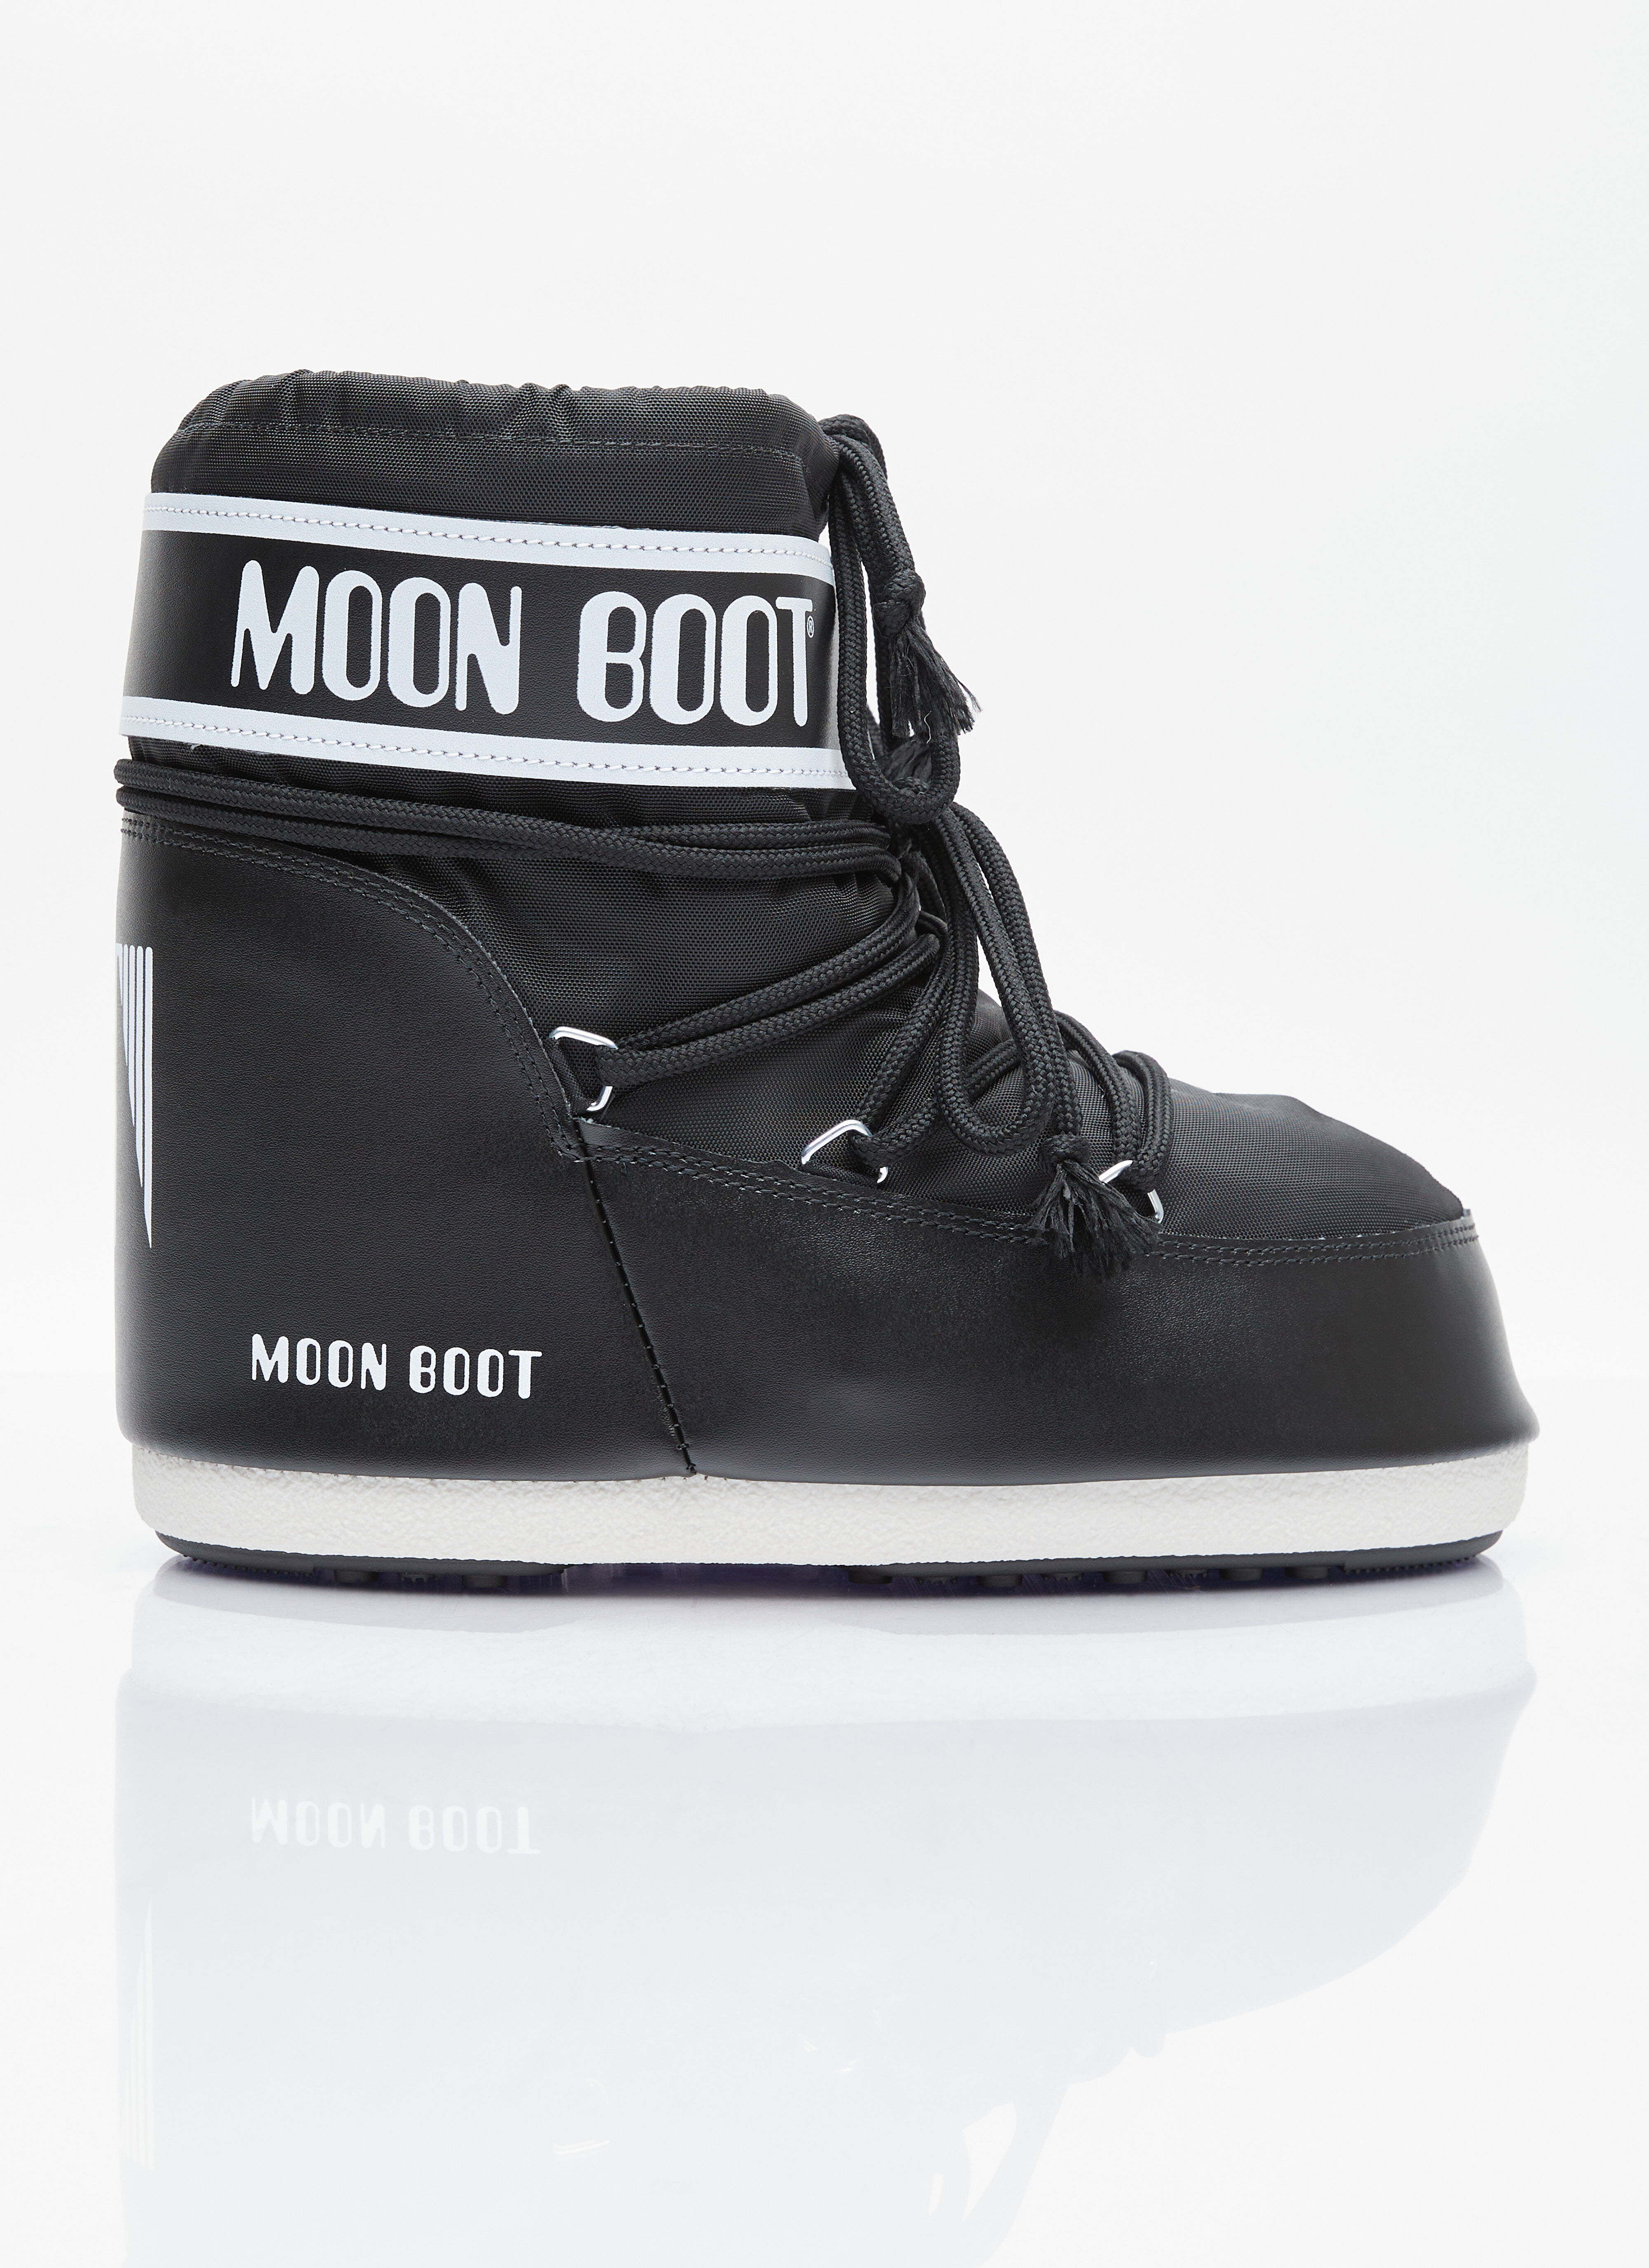 Moon Boot アイコンローナイロンブーツ ブラウン mnb0355002